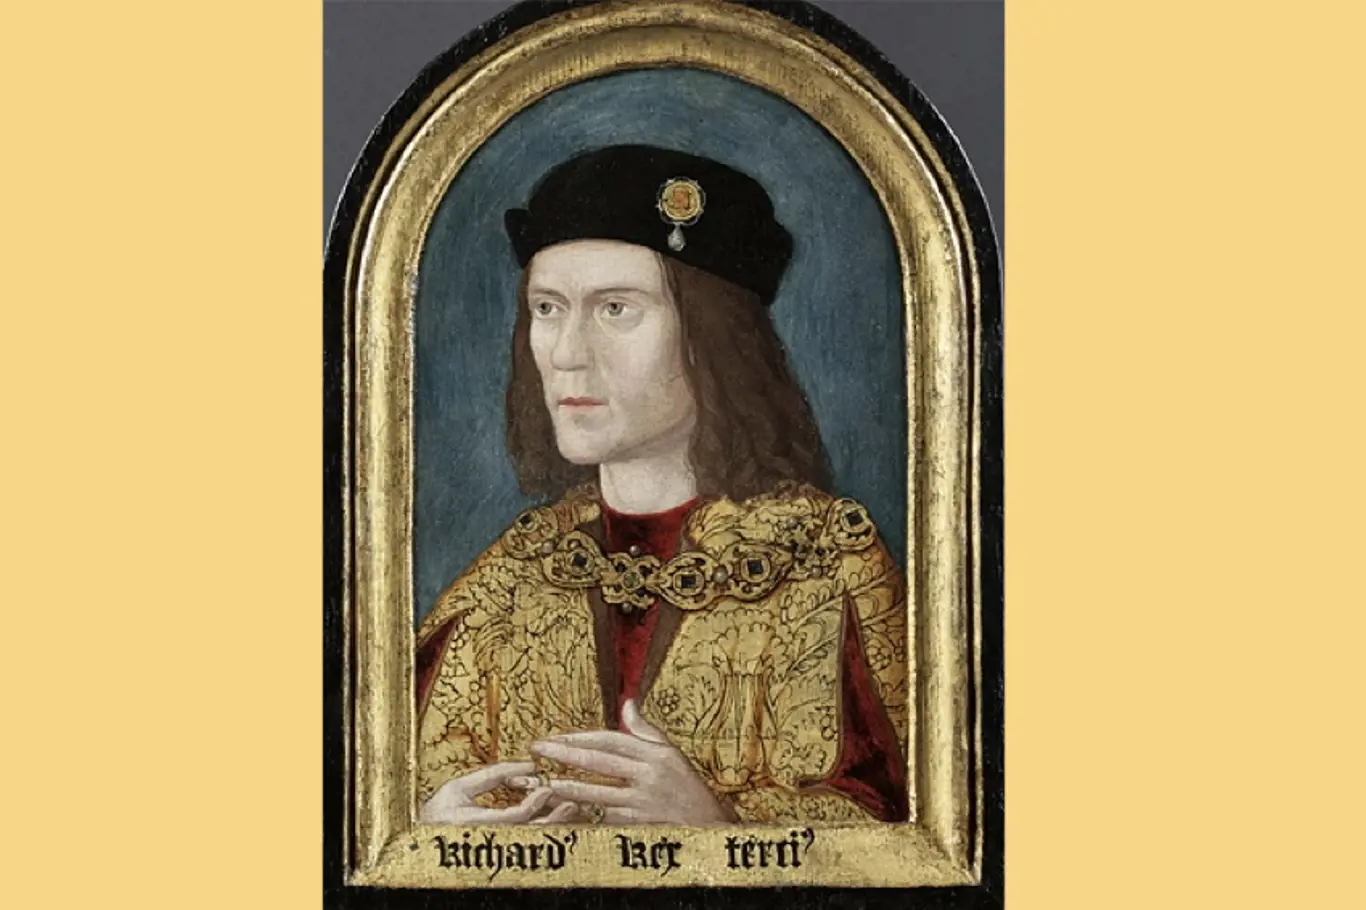 Portrét anglického krále Richarda III., namalovaný kolem roku 1520 (přibližná datace podle letokruhů na desce) podle ztraceného originálu pro rodinu Pastonů, od roku 1828 v majetku Society of Antiquaries v Londýně.